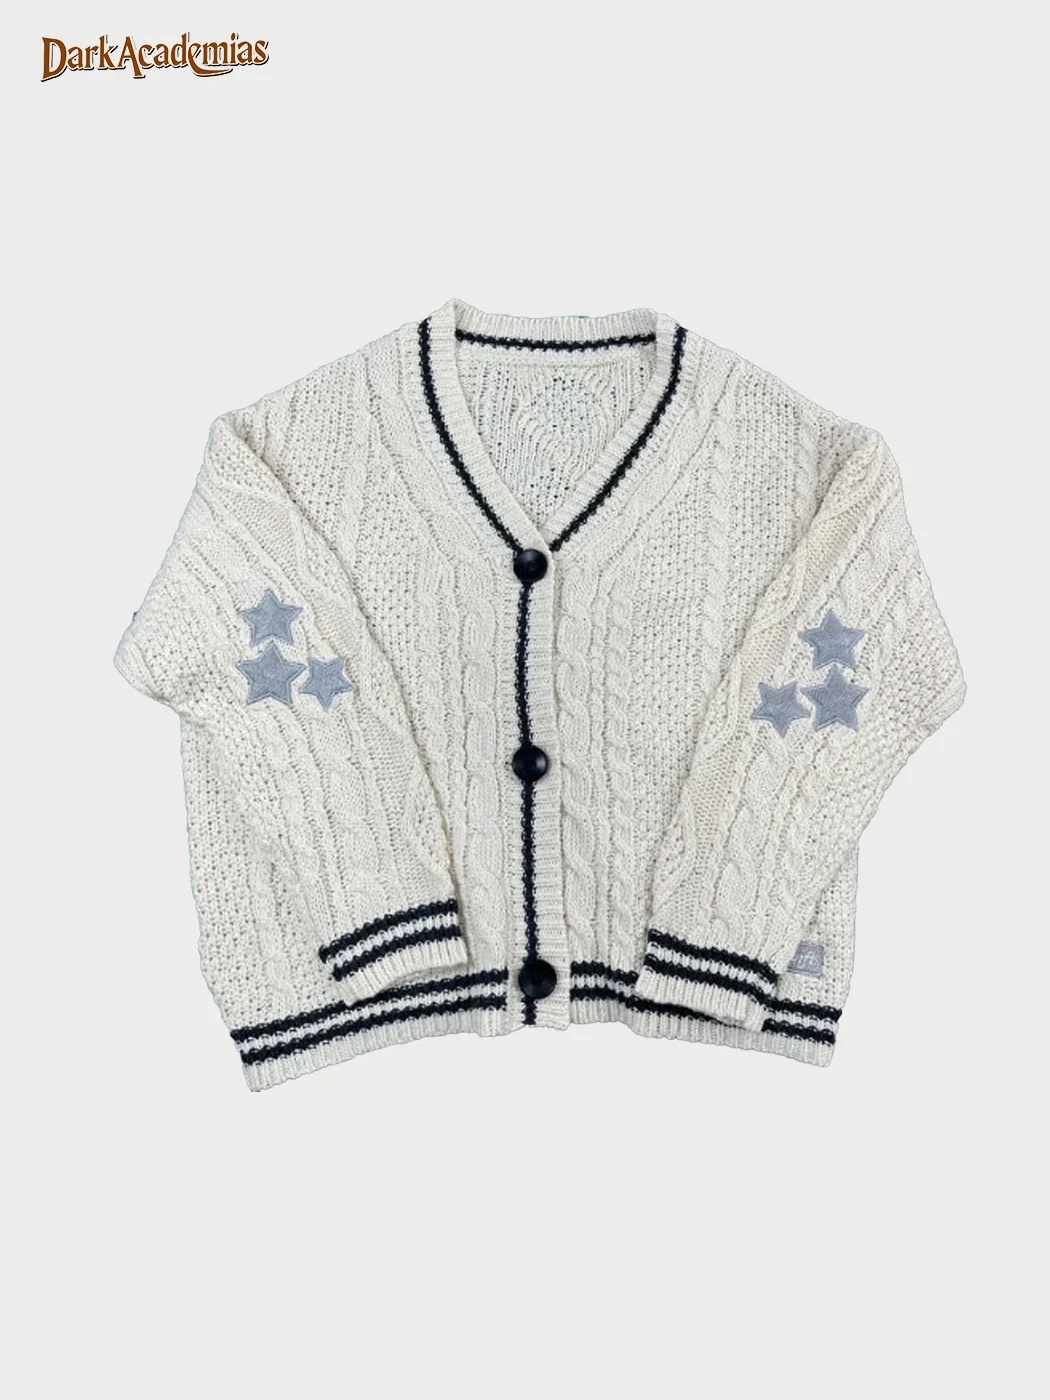 Star Embroidered Cardigan Sweater / DarkAcademias /Darkacademias